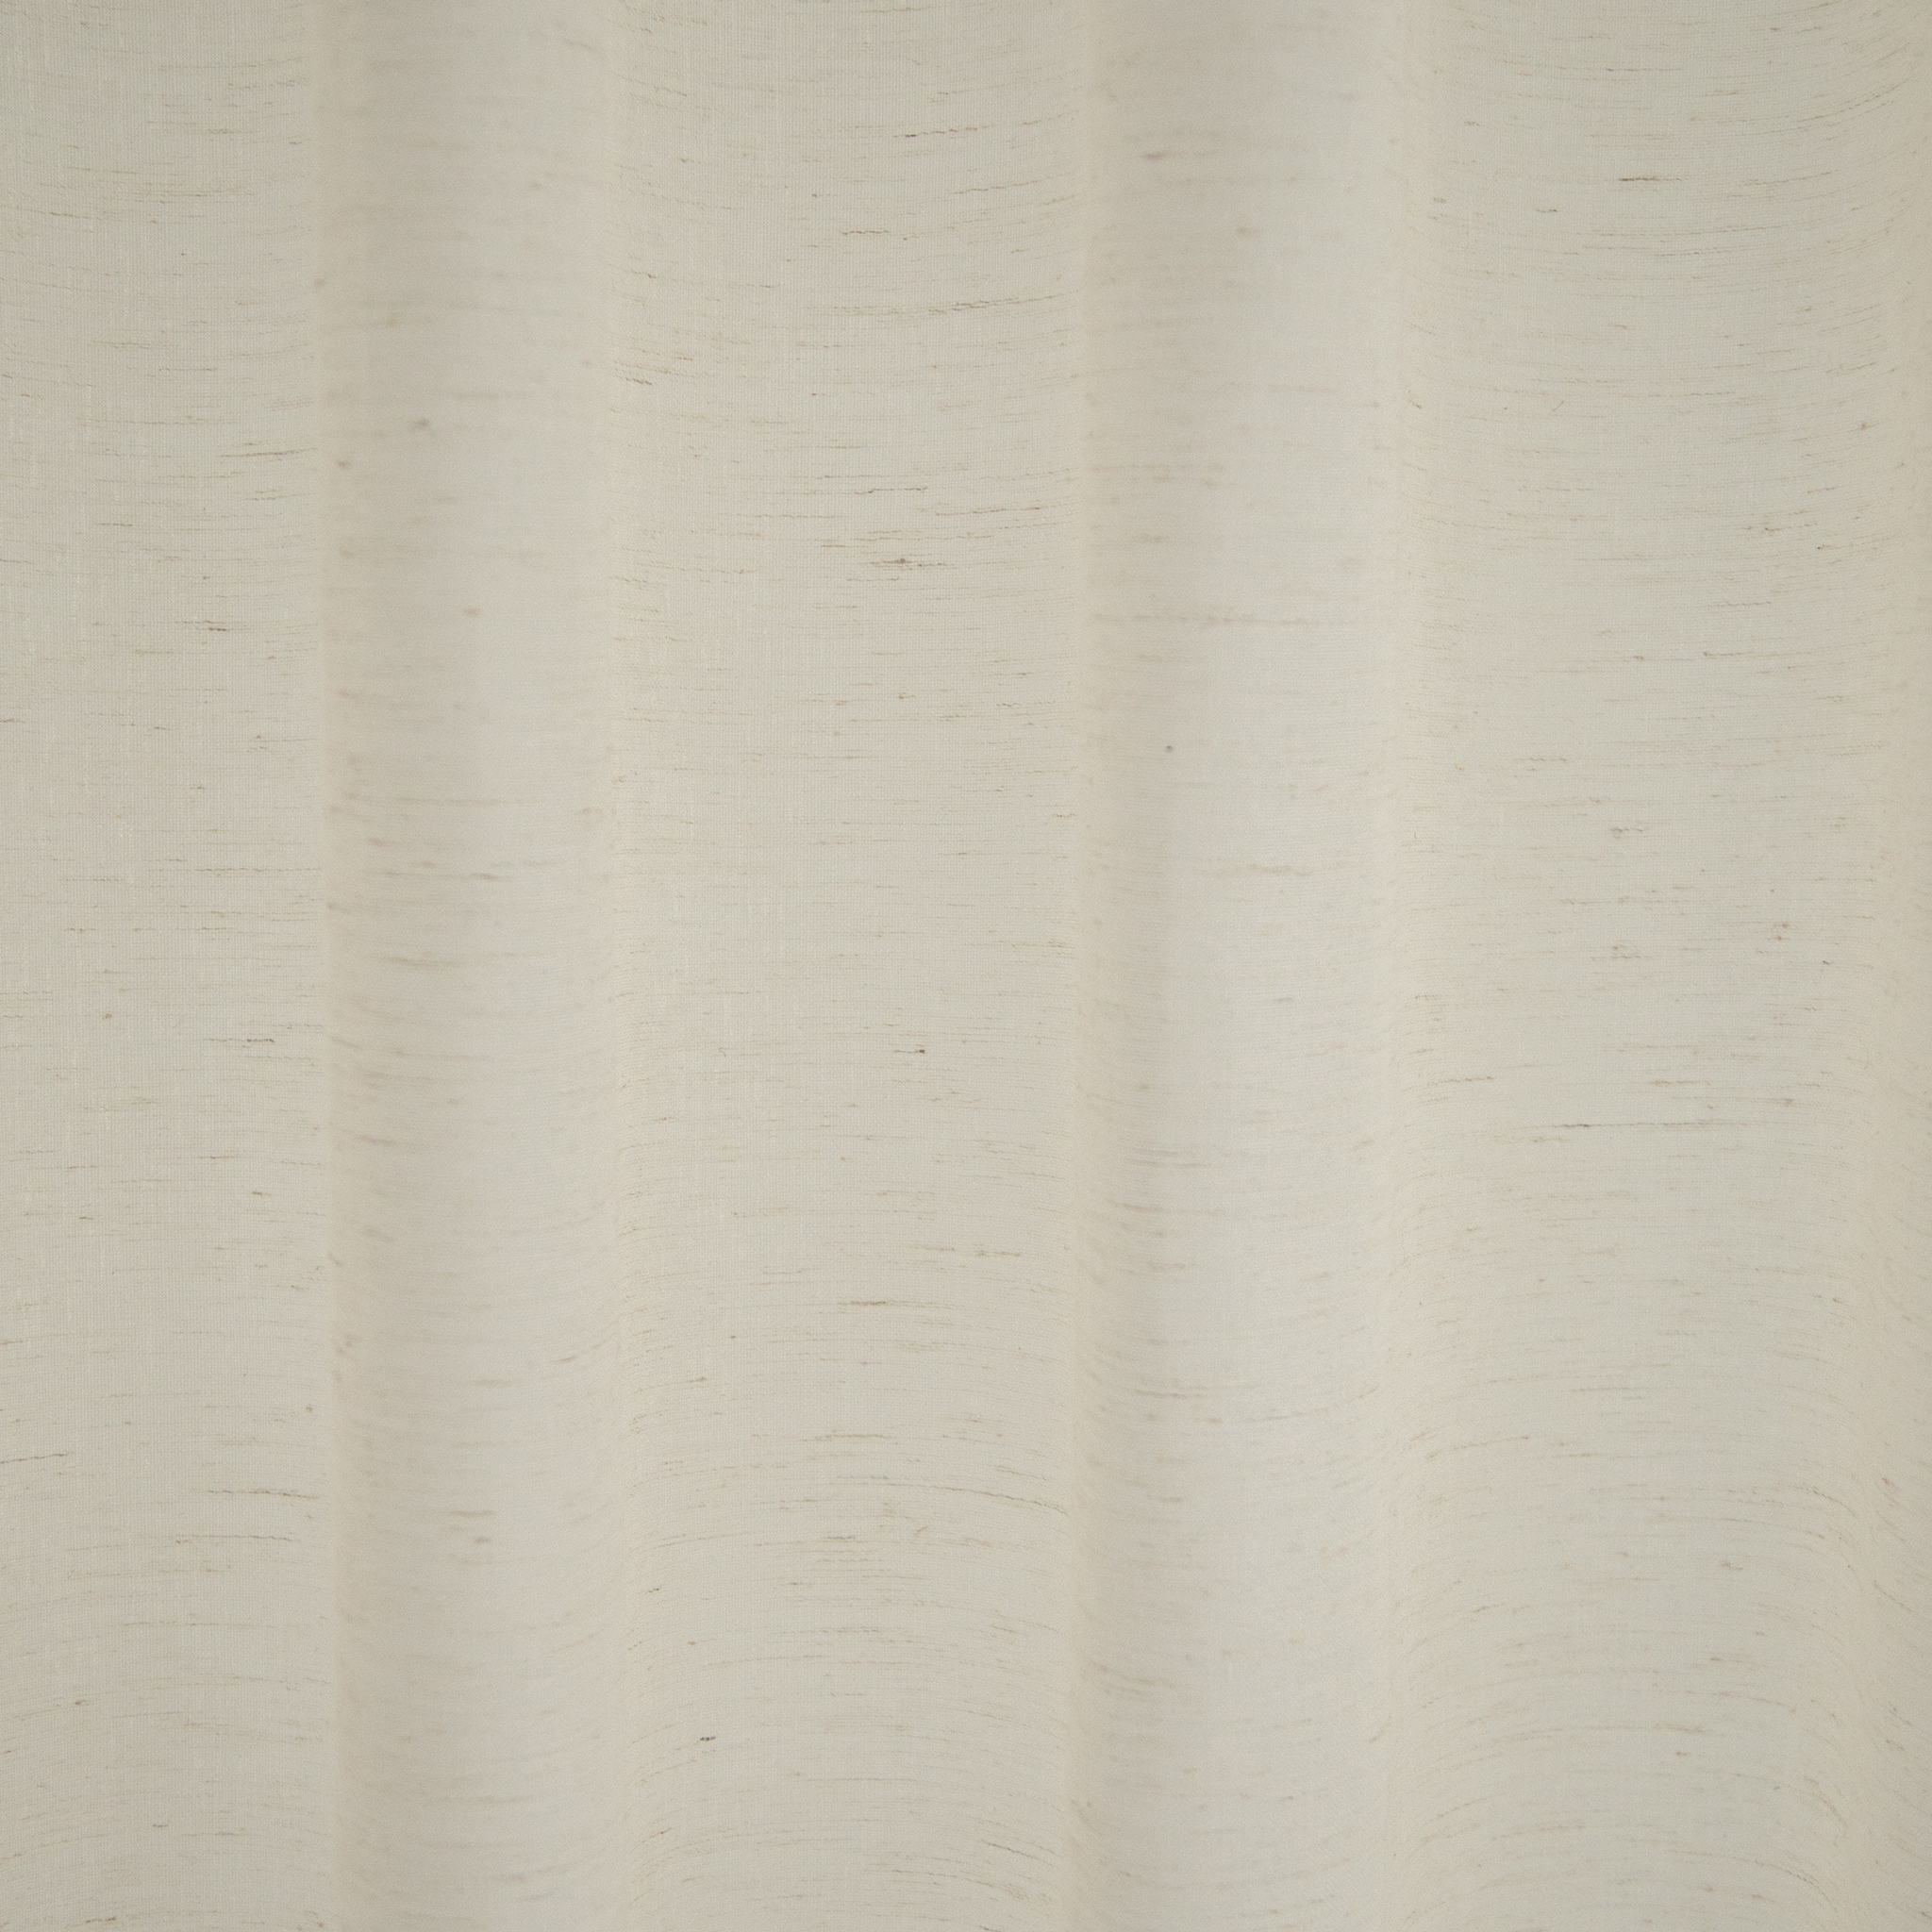 Homing Vorhang mit verdeckter Schlaufe Lian bei Möbel Rogg | Fertiggardinen